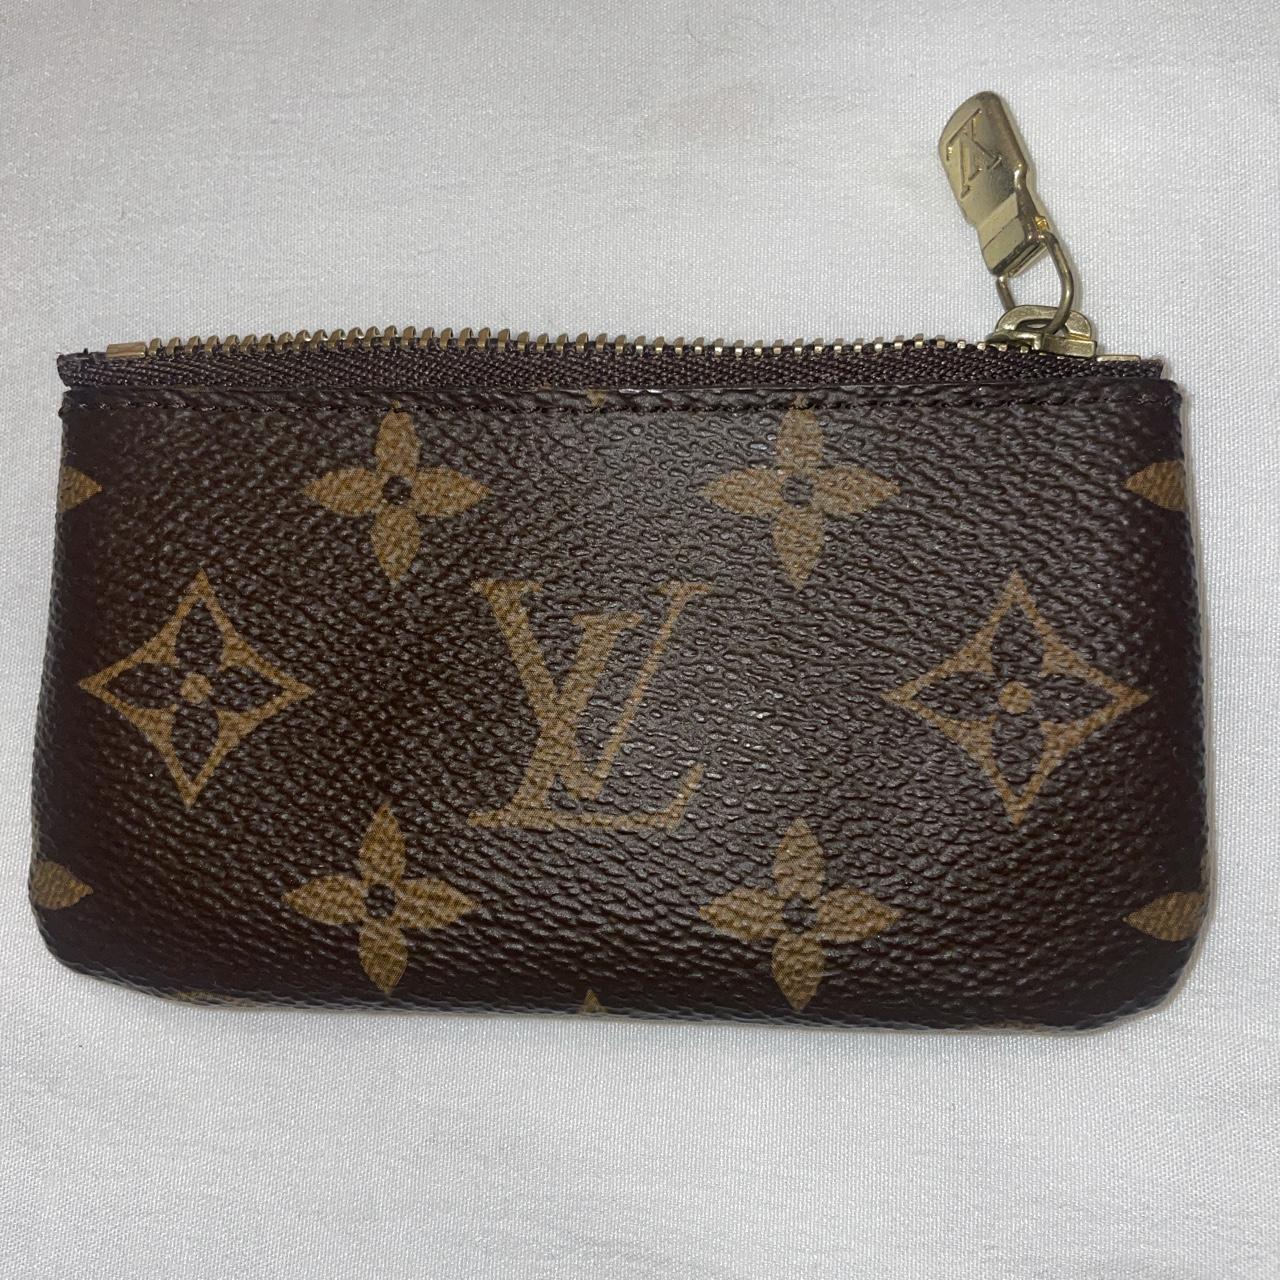 Louis Vuitton Monogram Key Wallet 100% authentic - Depop